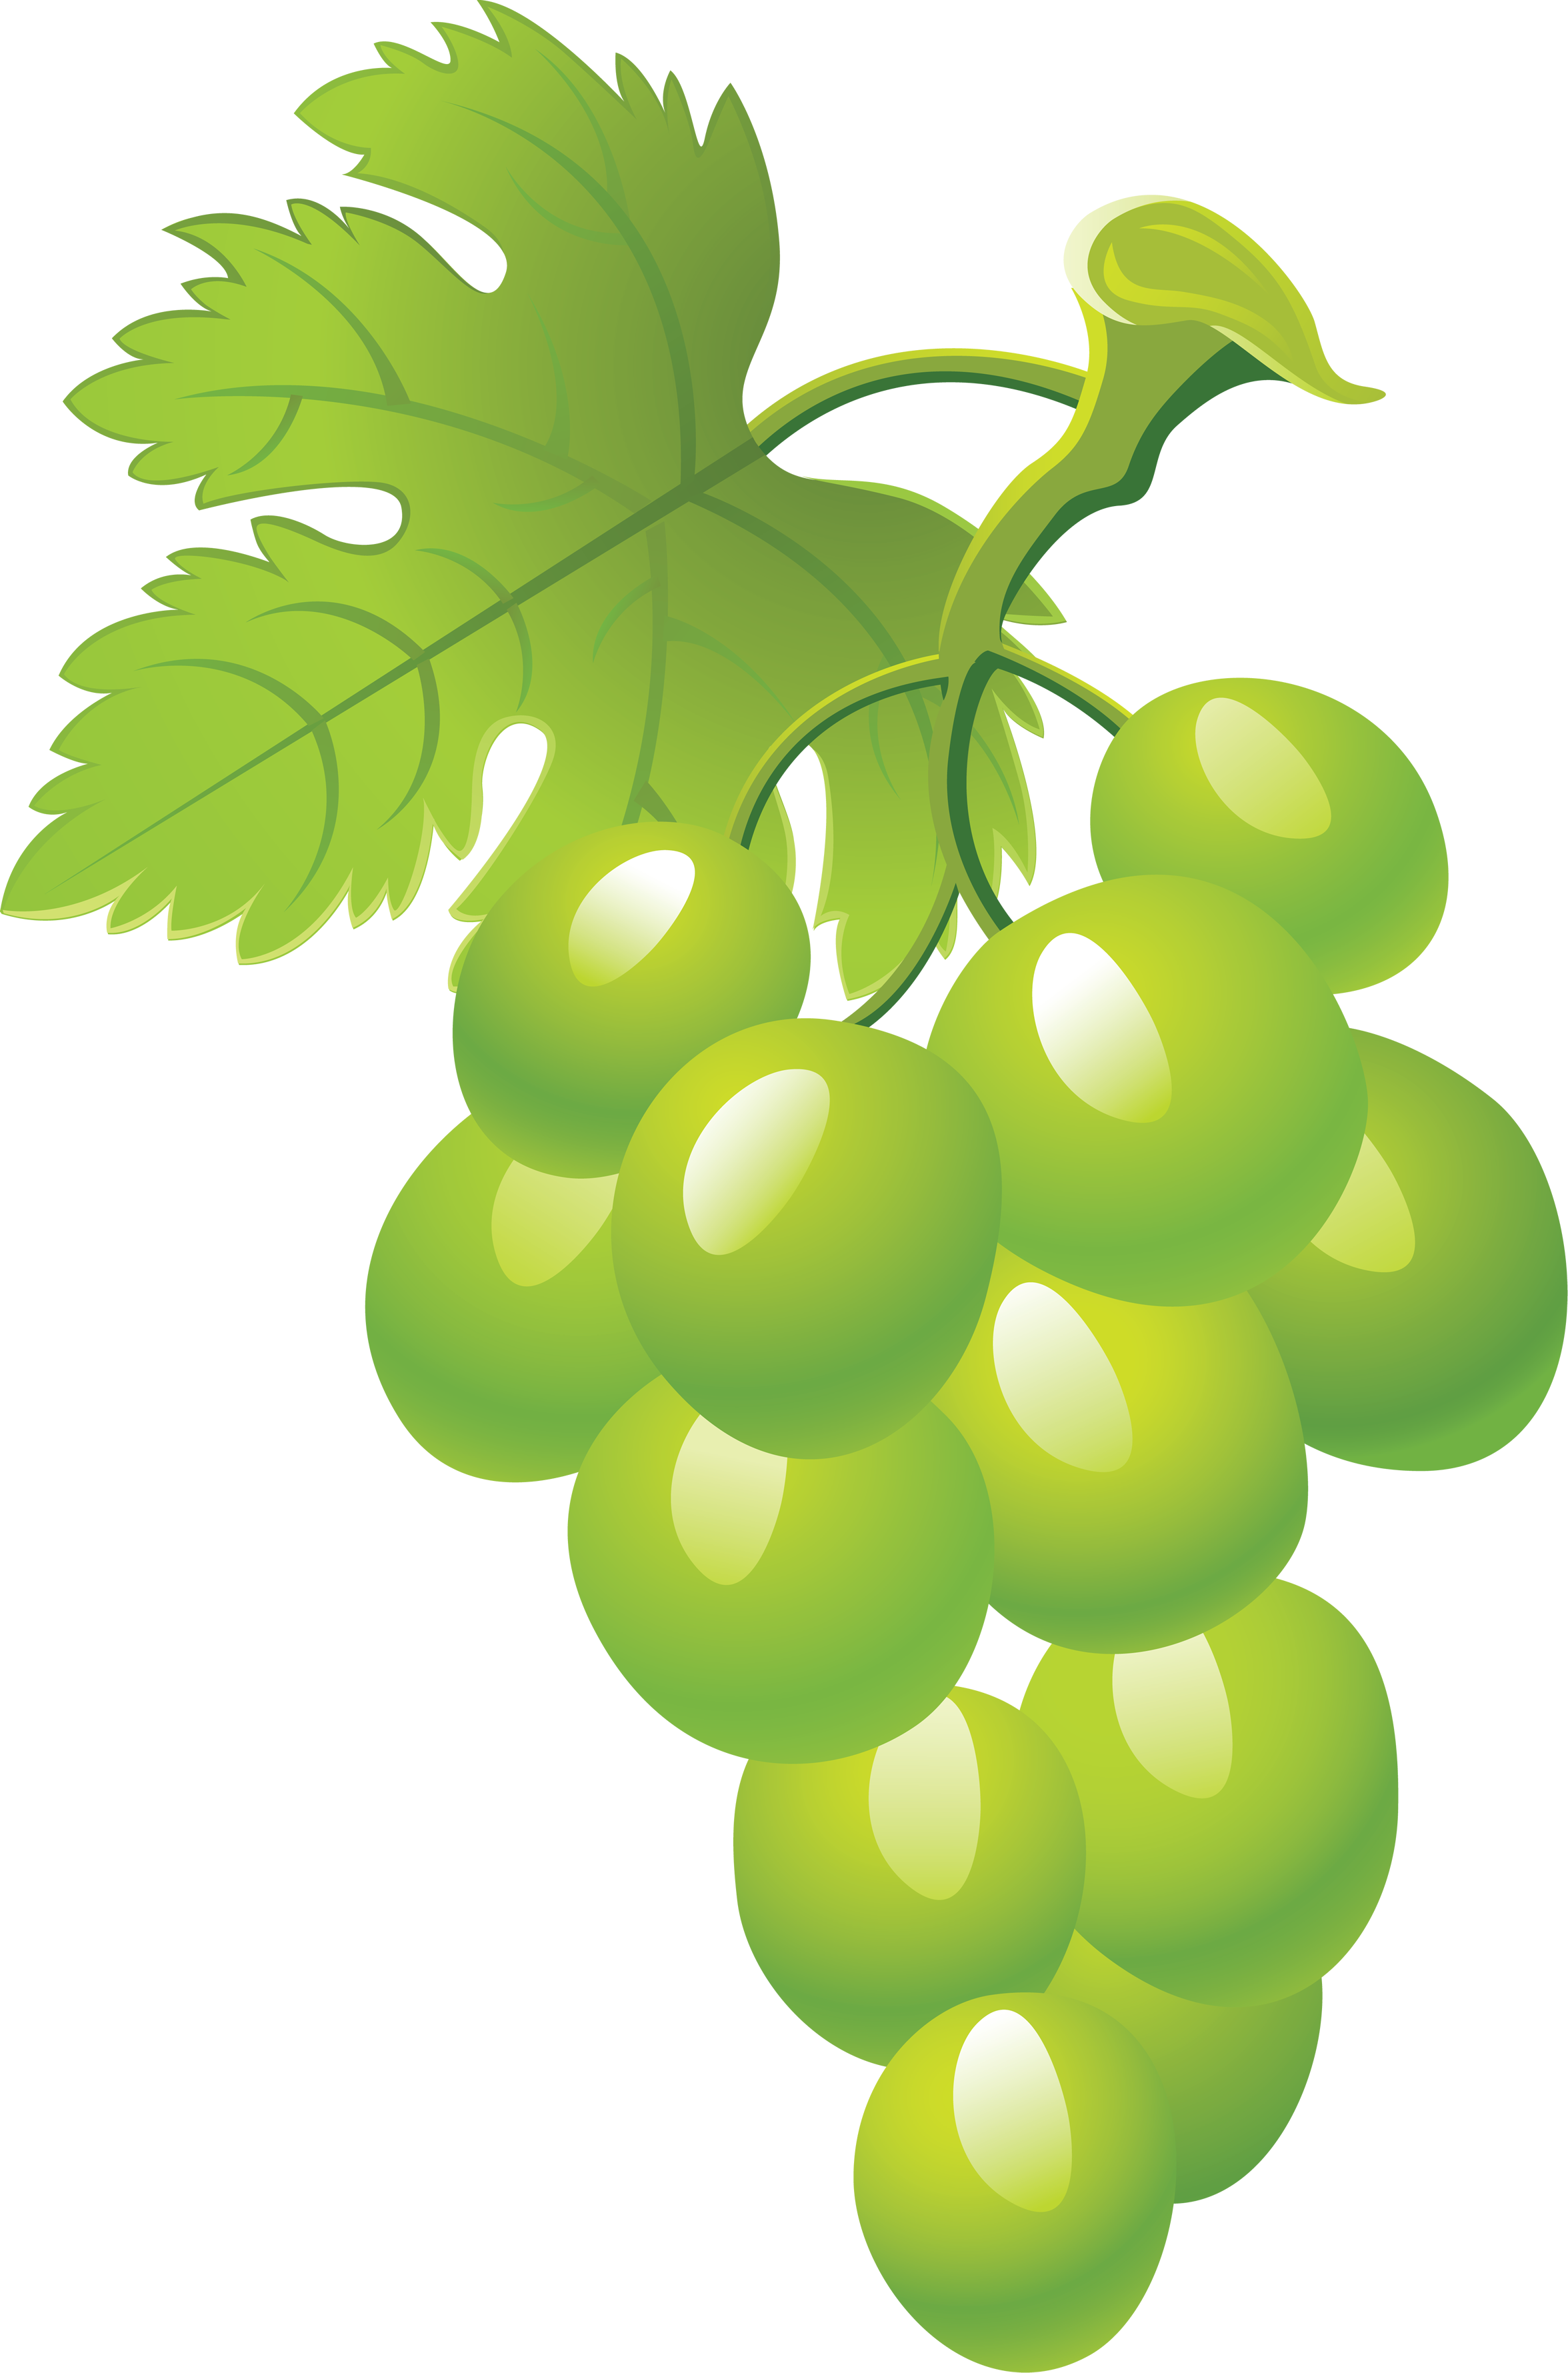 Imagen Transparente de uvas verdes